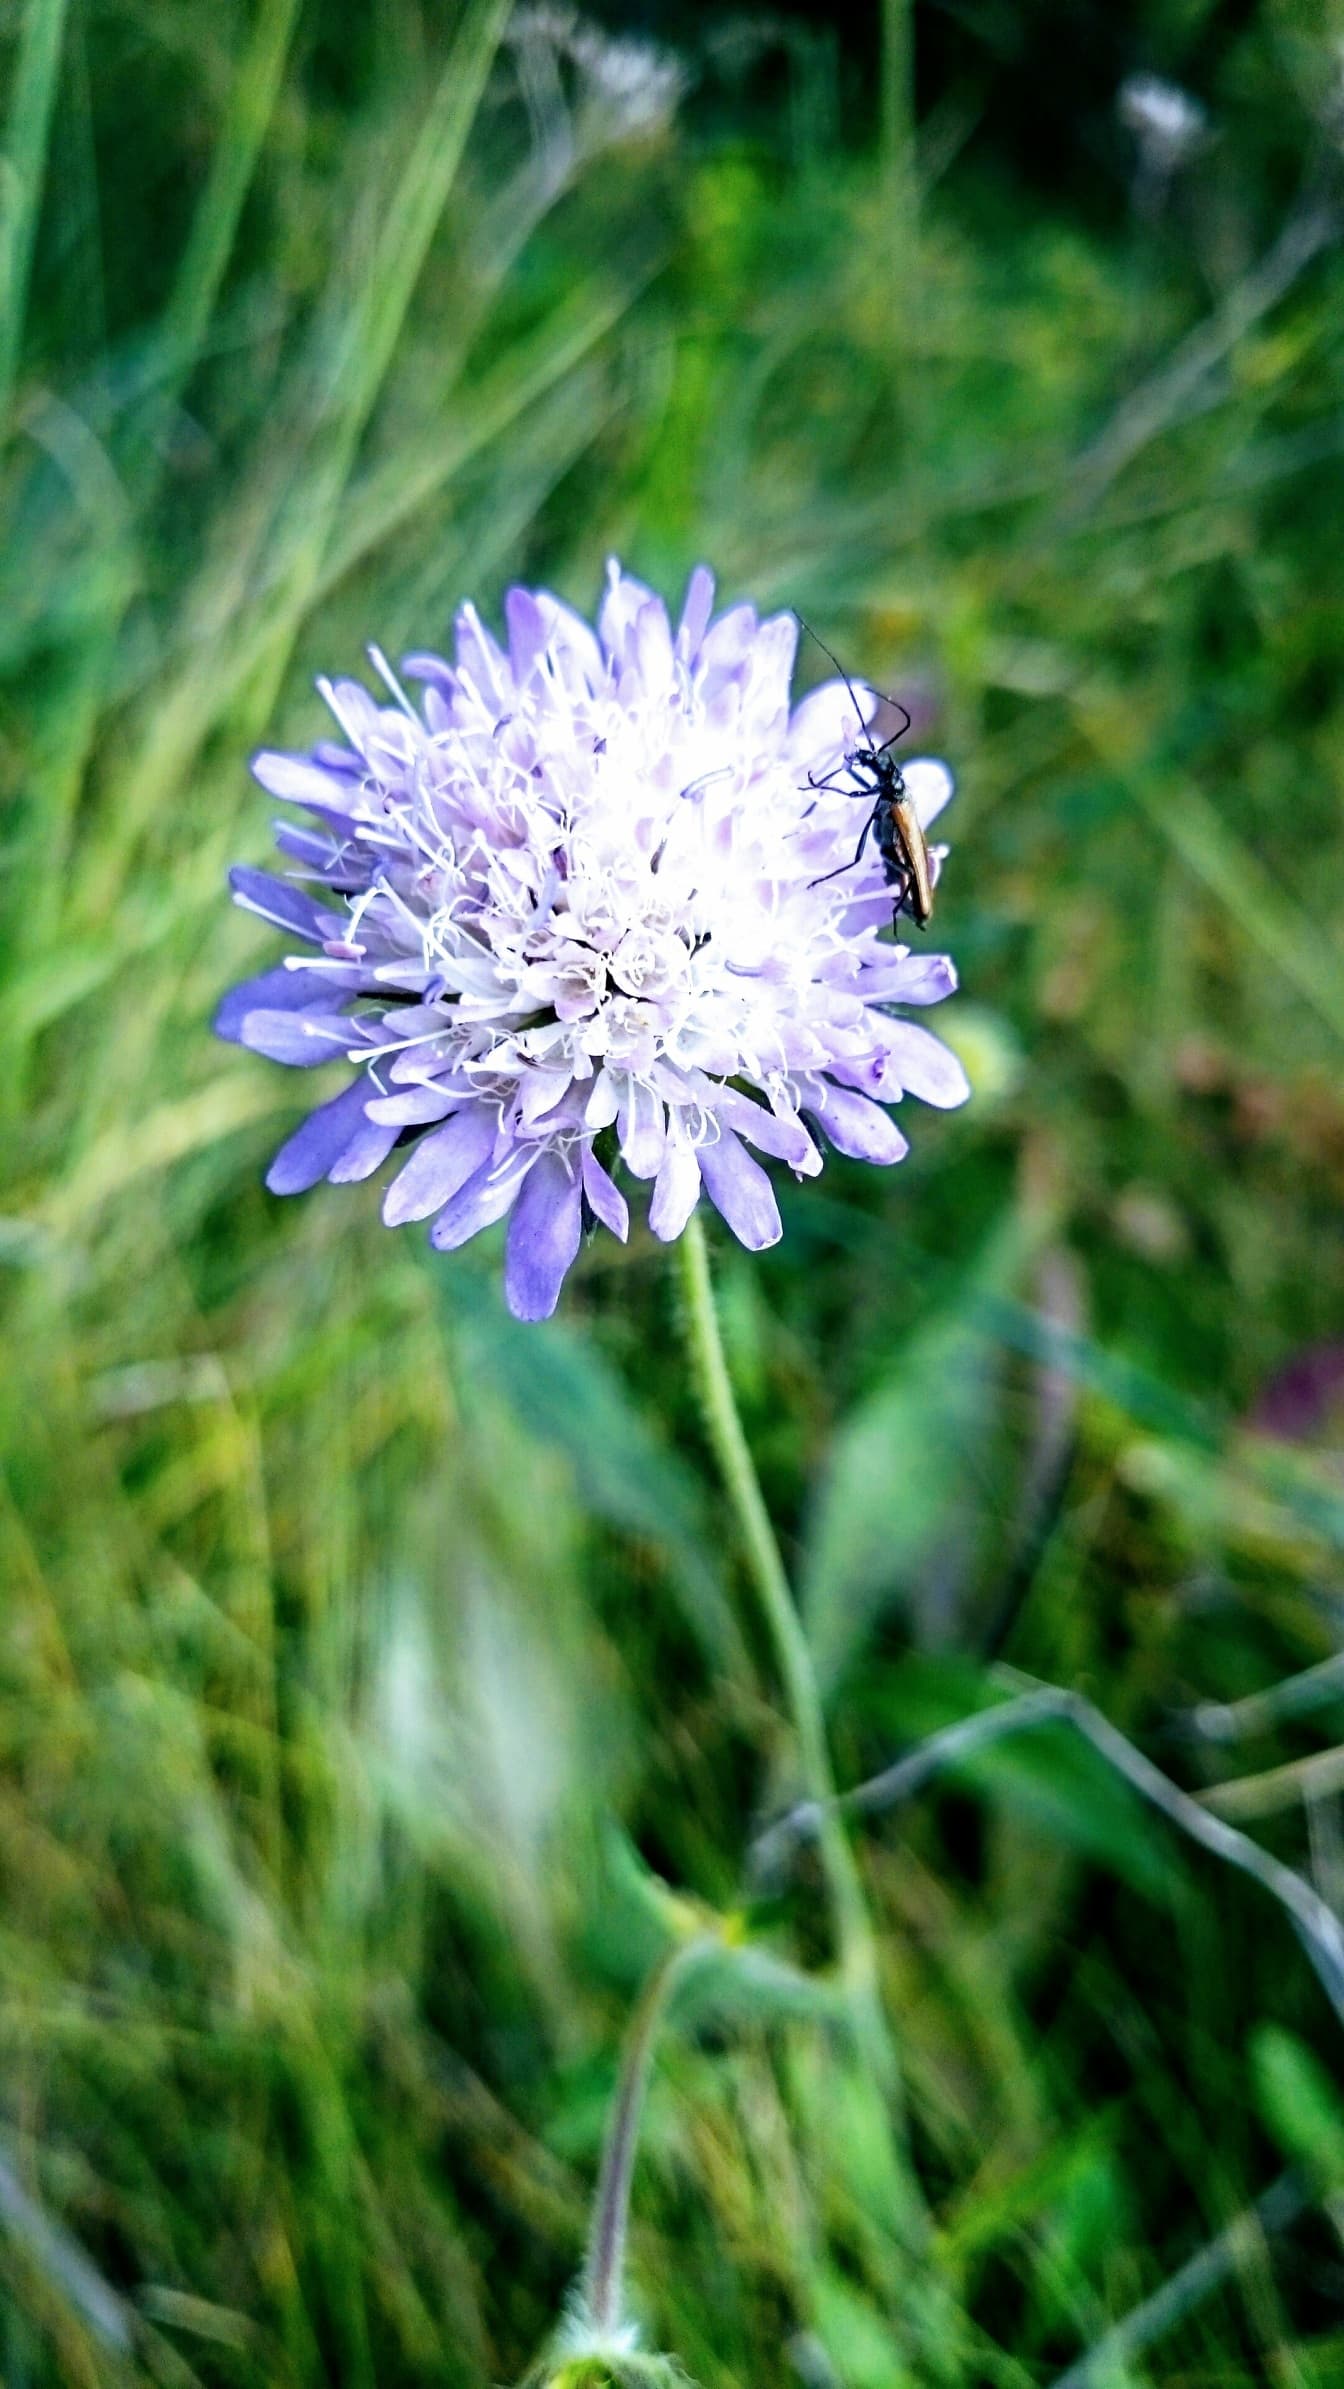 Lys lilla wildflower med liten bug på den